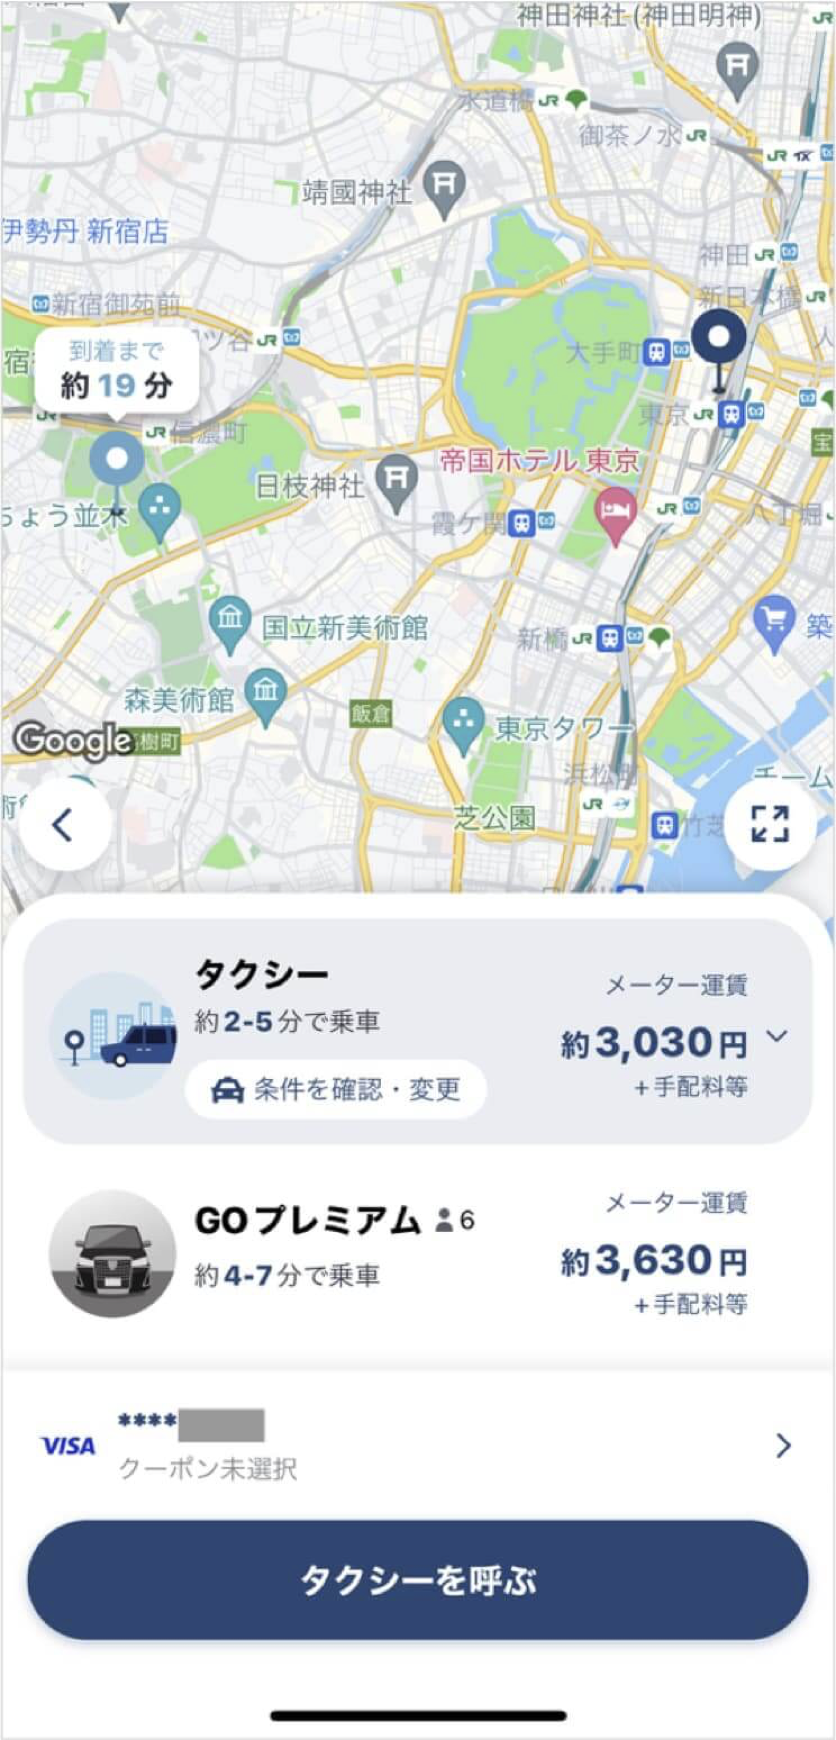 東京駅から神宮球場までのタクシー料金・所要時間まとめ